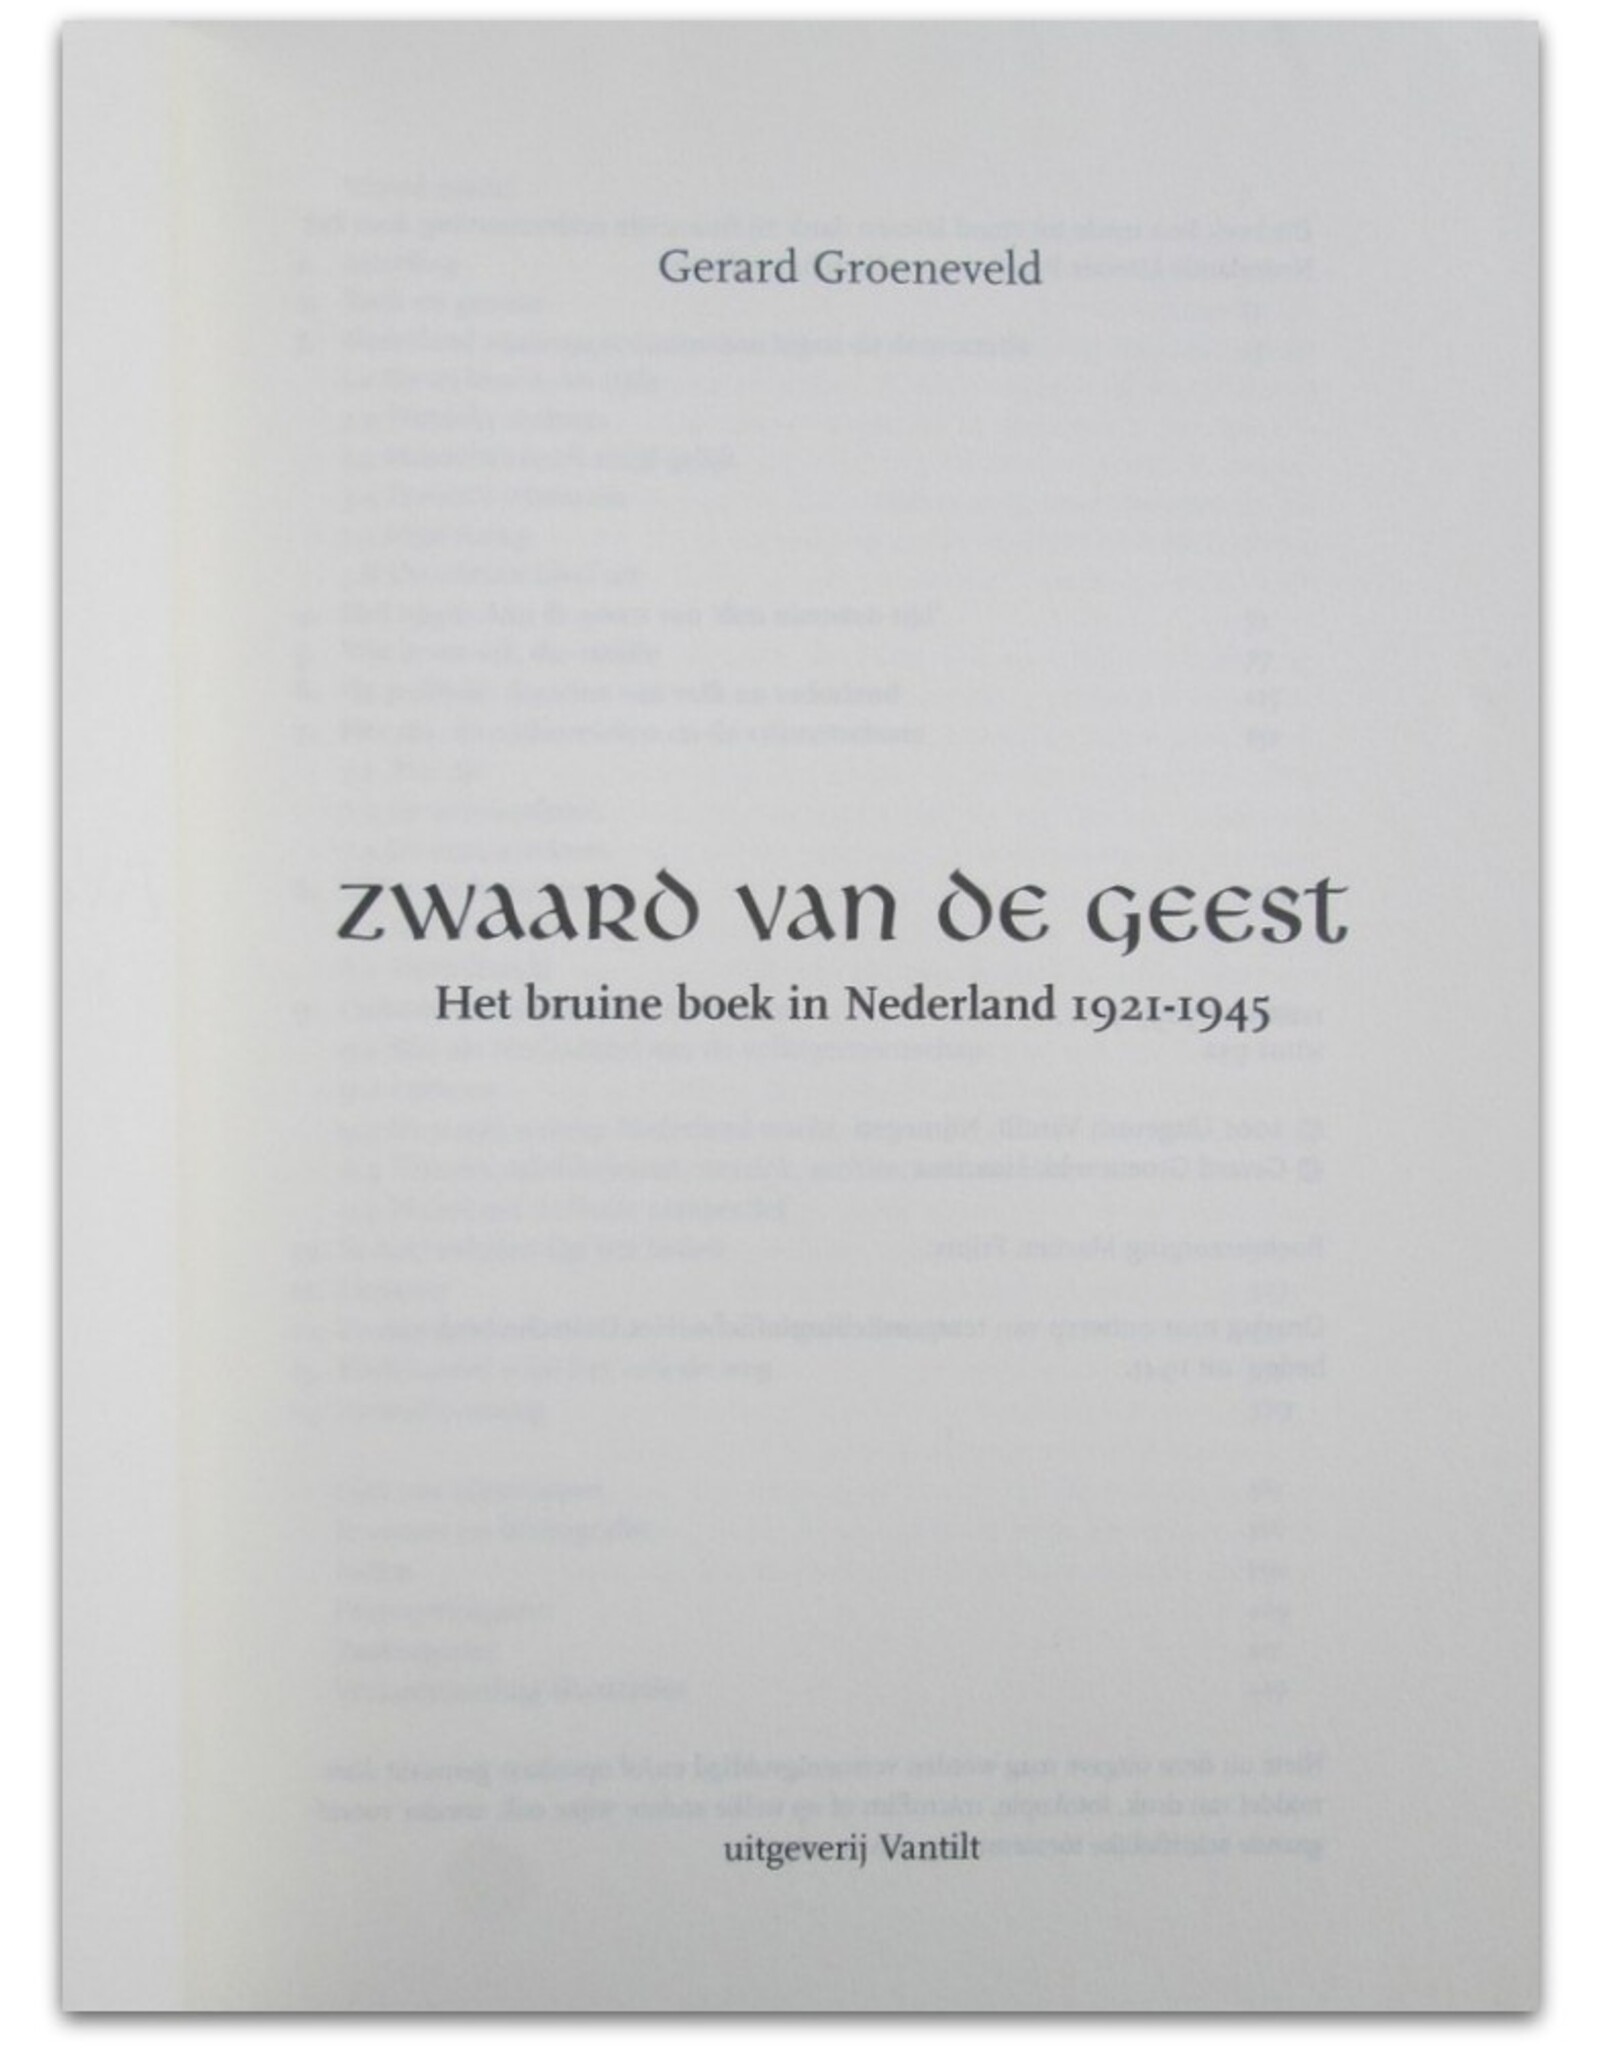 Gerard Groeneveld - Zwaard van de geest. Het bruine boek in Nederland 1921-1945